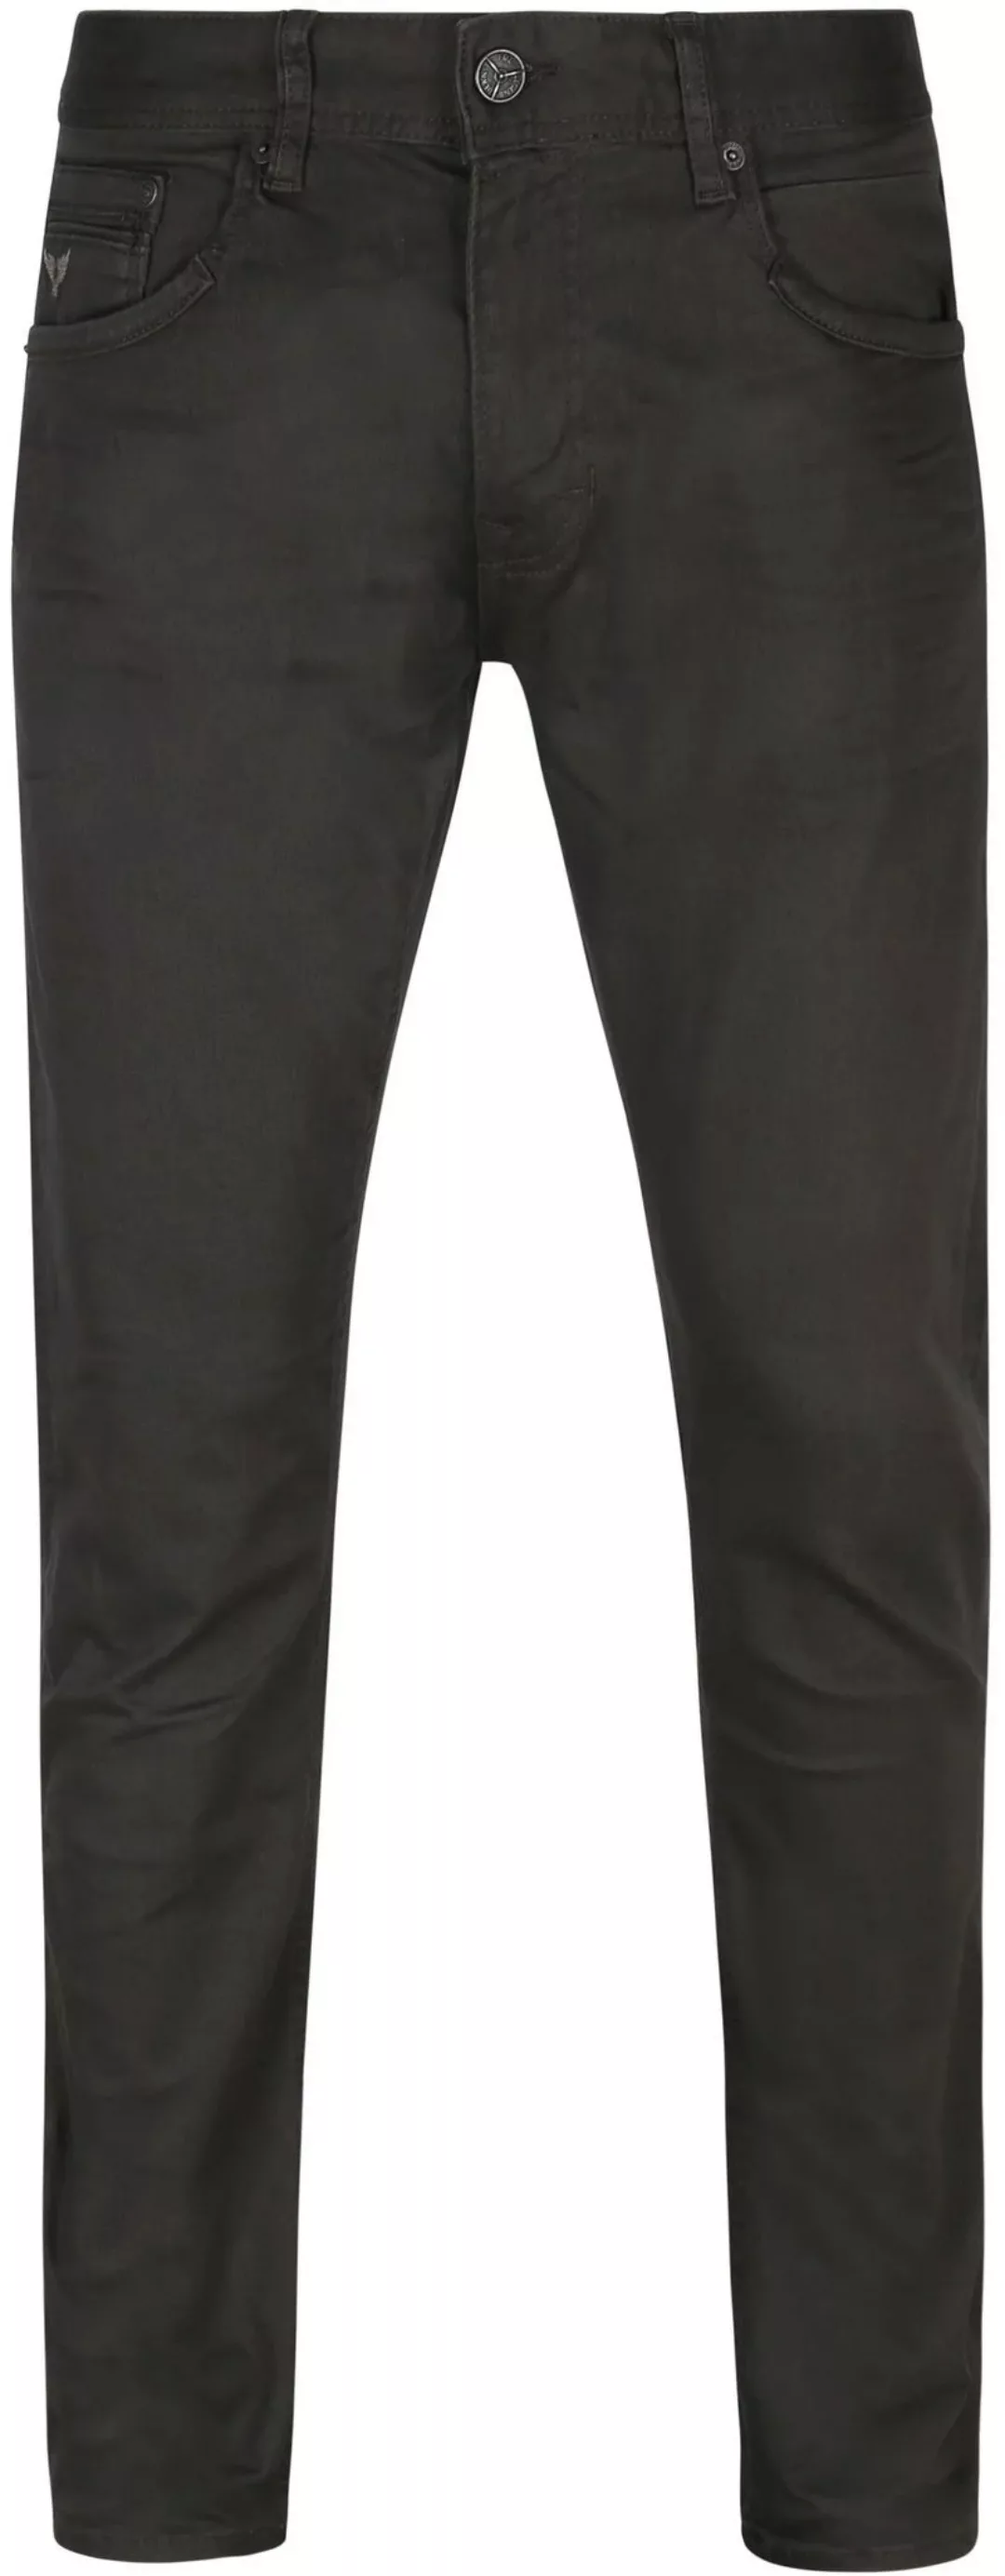 PME Legend Tailwheel Jeans Anthrazit - Größe W 32 - L 34 günstig online kaufen